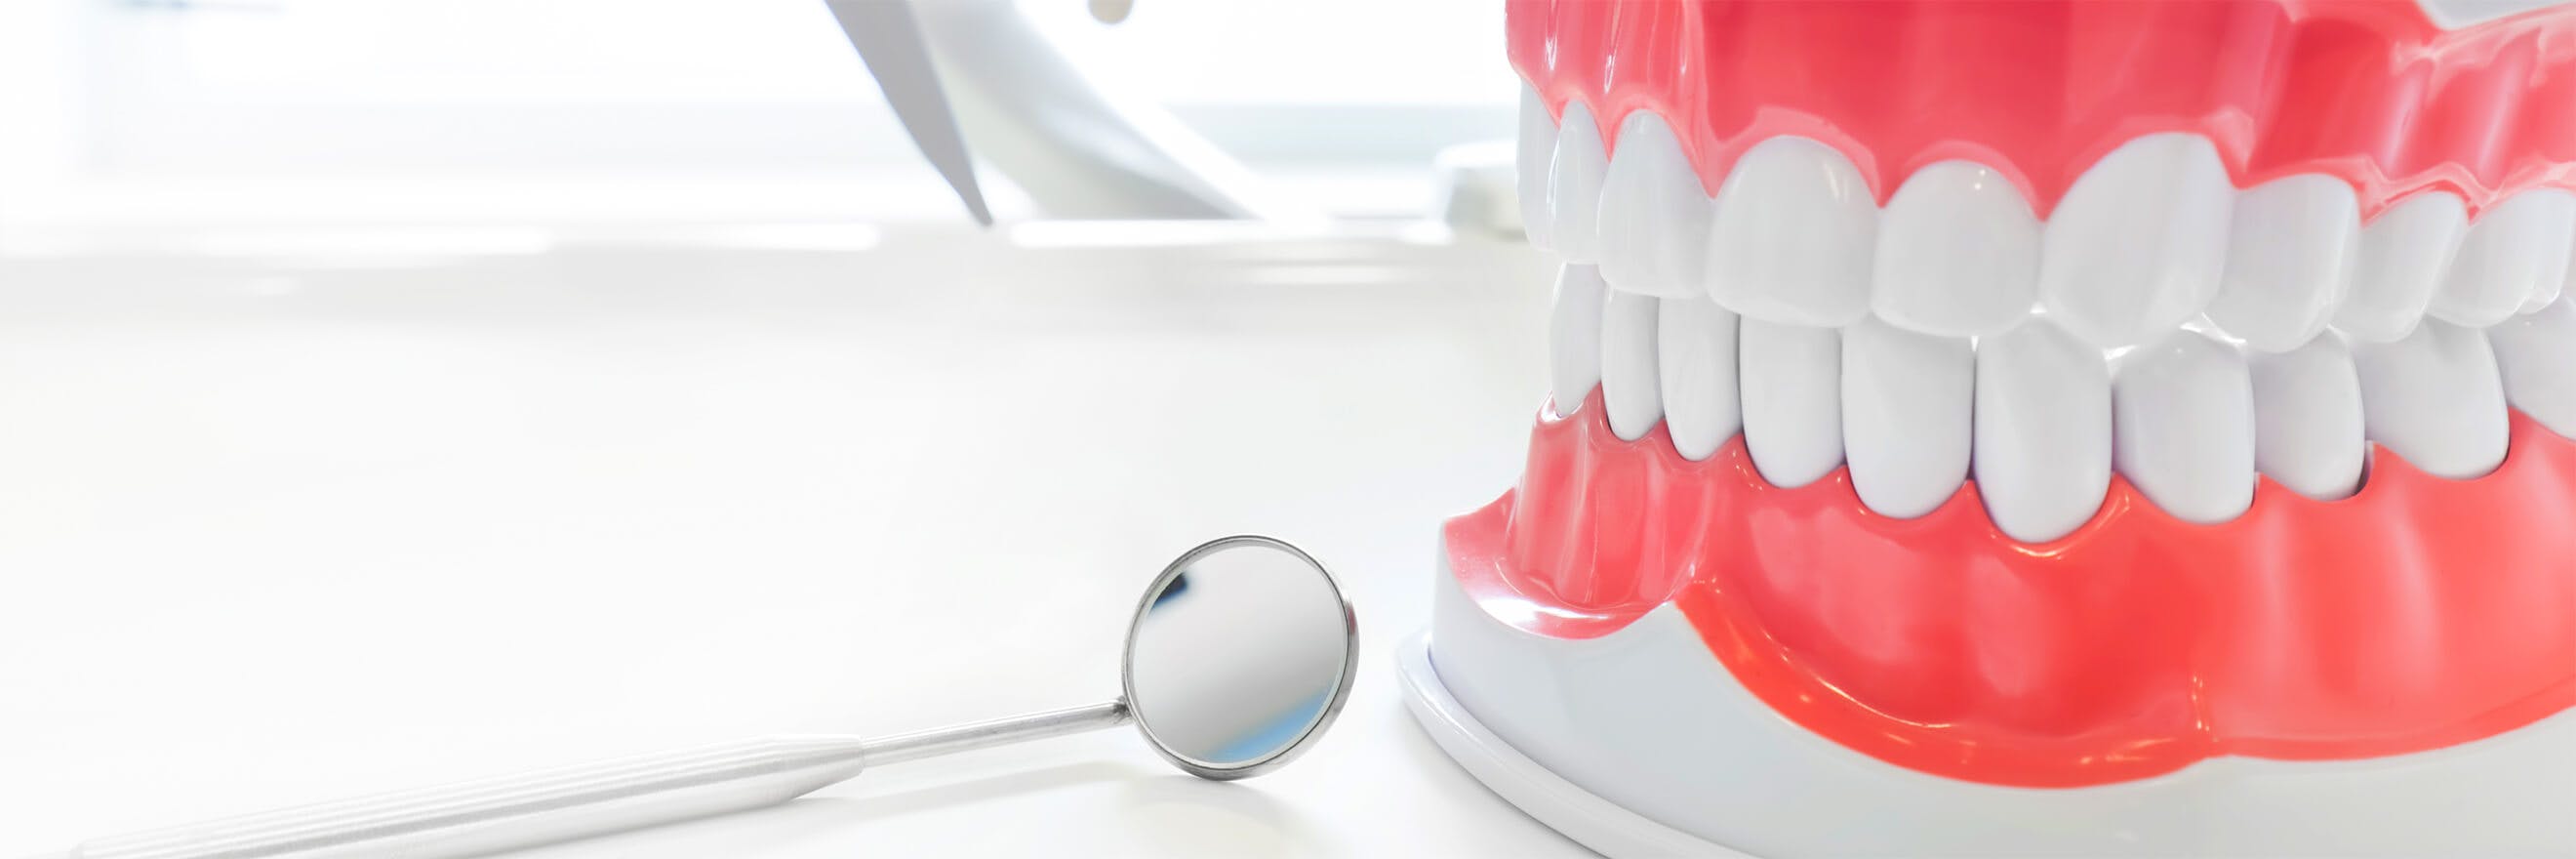 Tandmodell och en tandläkarspegel